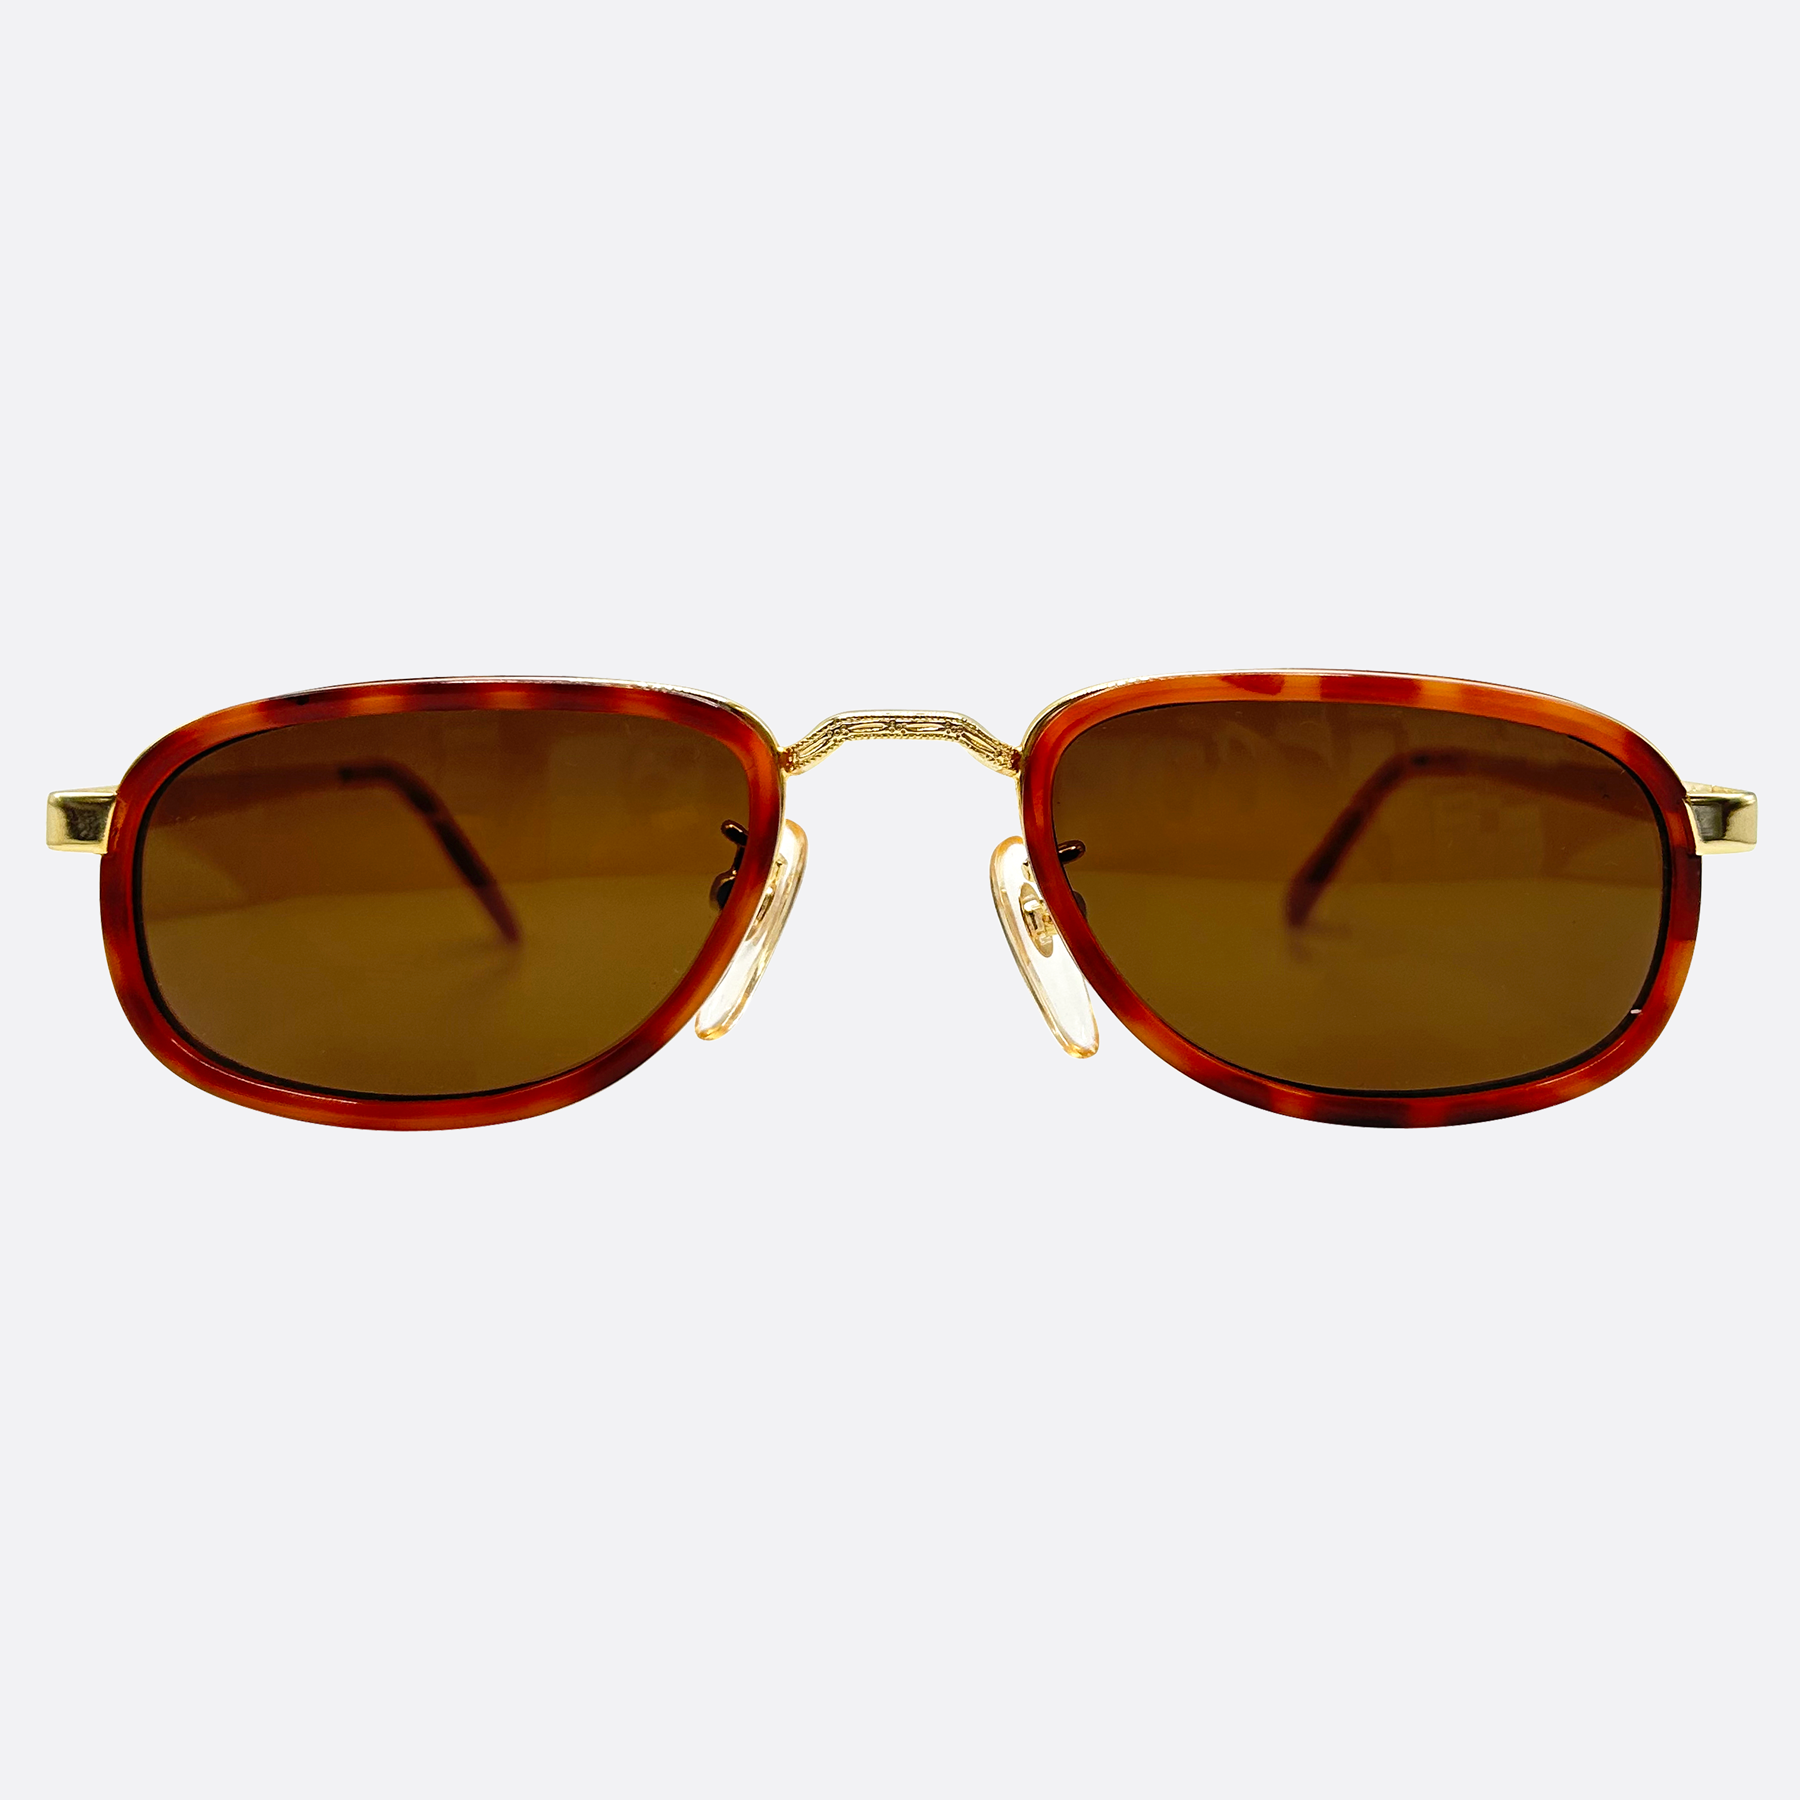 GROVER Trending 90s Sunglasses